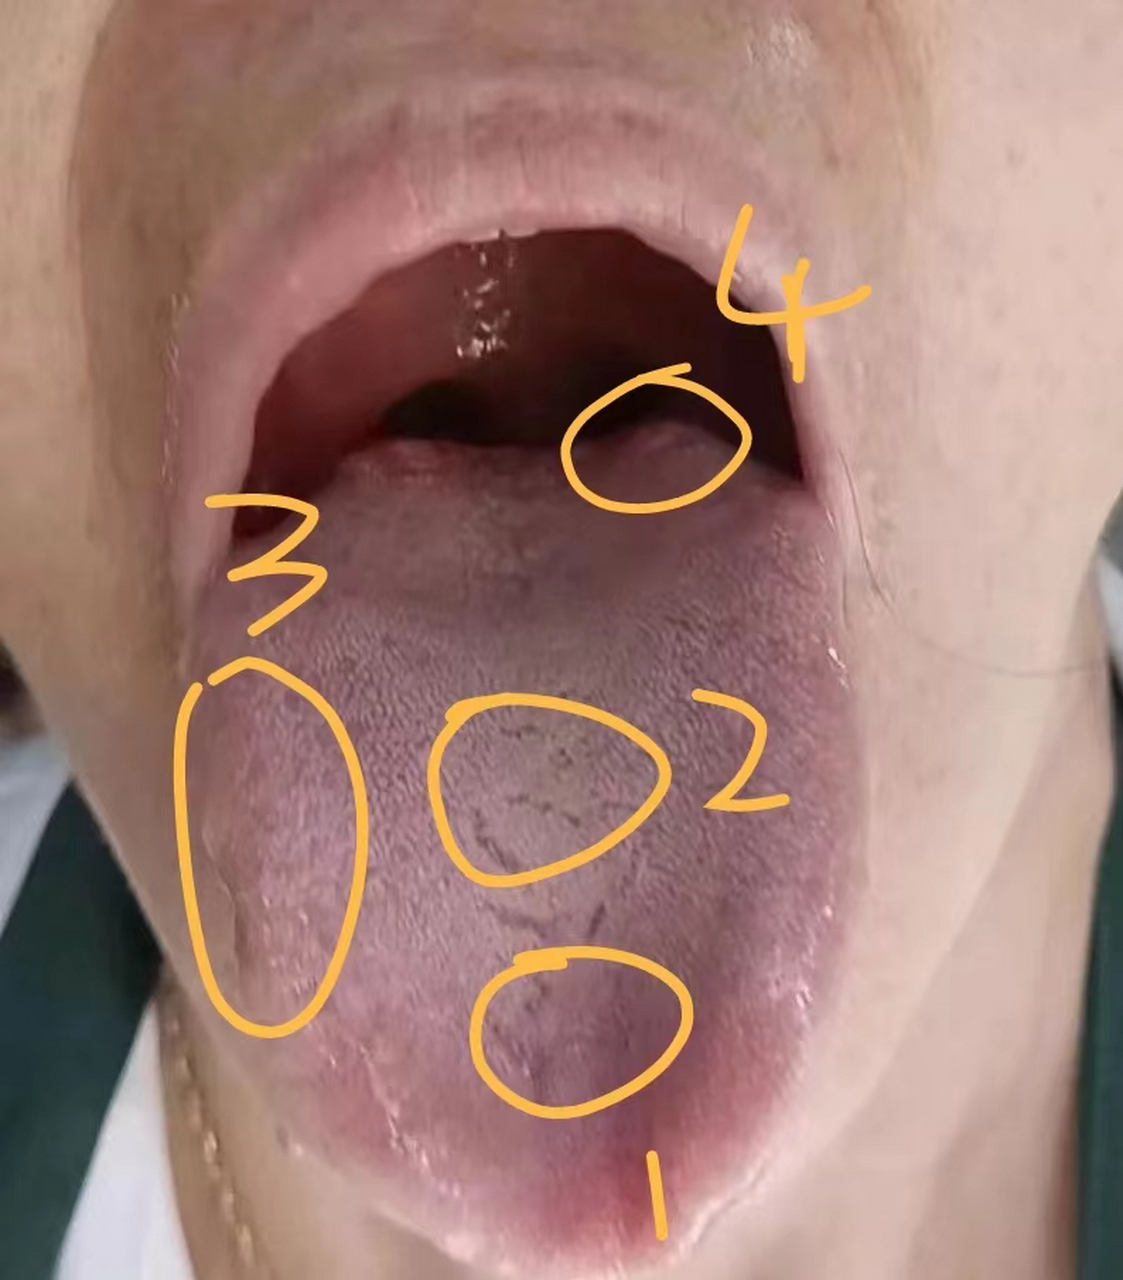 1:舌前肺区凹陷,肾区凹陷的,说明气不足,会出现乏力,困倦,劳累后可能